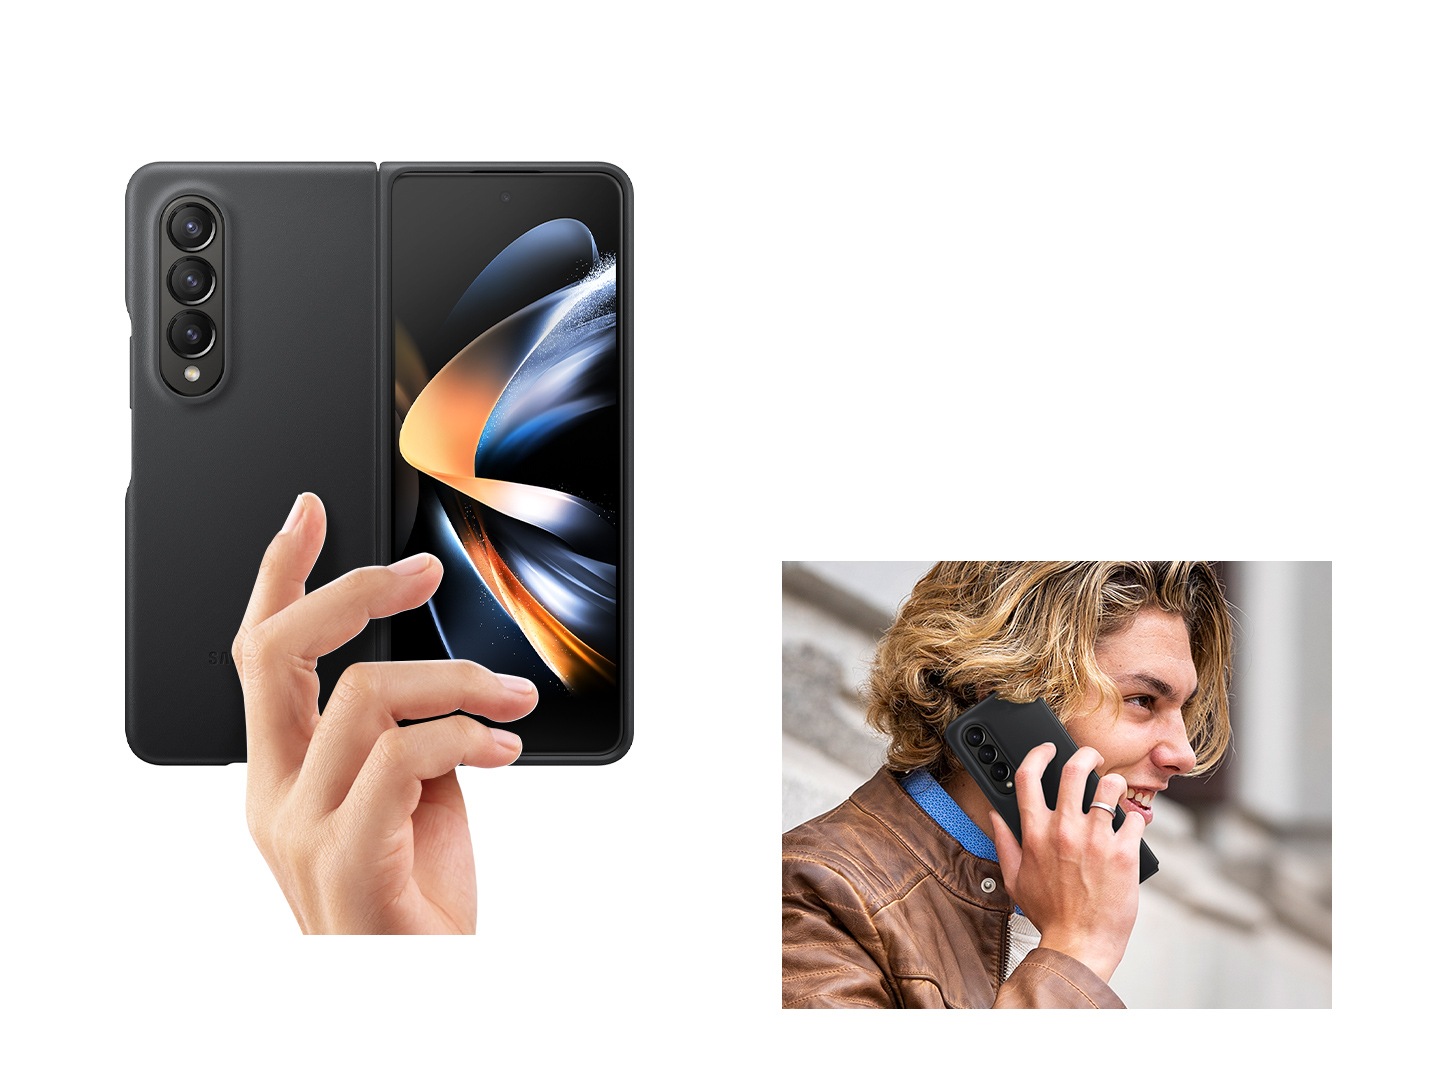 يد تحمل جهاز Galaxy Z Fold4 المفتوح في غطاء جلدي أسود. إلى اليمين رجل يحمل جهاز Galaxy Z Fold4 في غطاء جلدي أسود لإجراء مكالمة هاتفية.